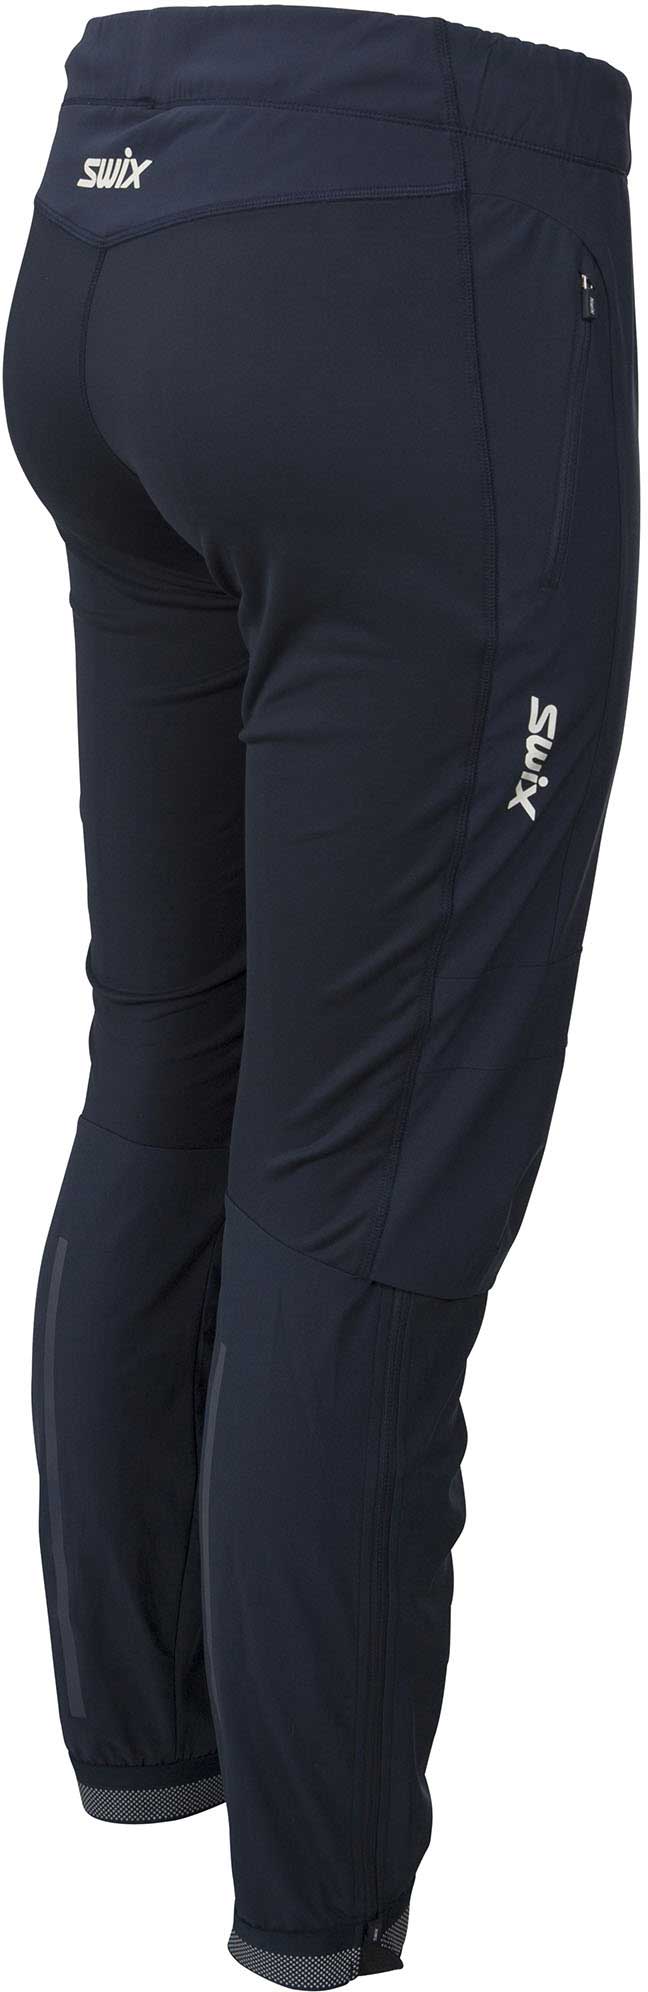 Dámské kalhoty na běžecké lyžování